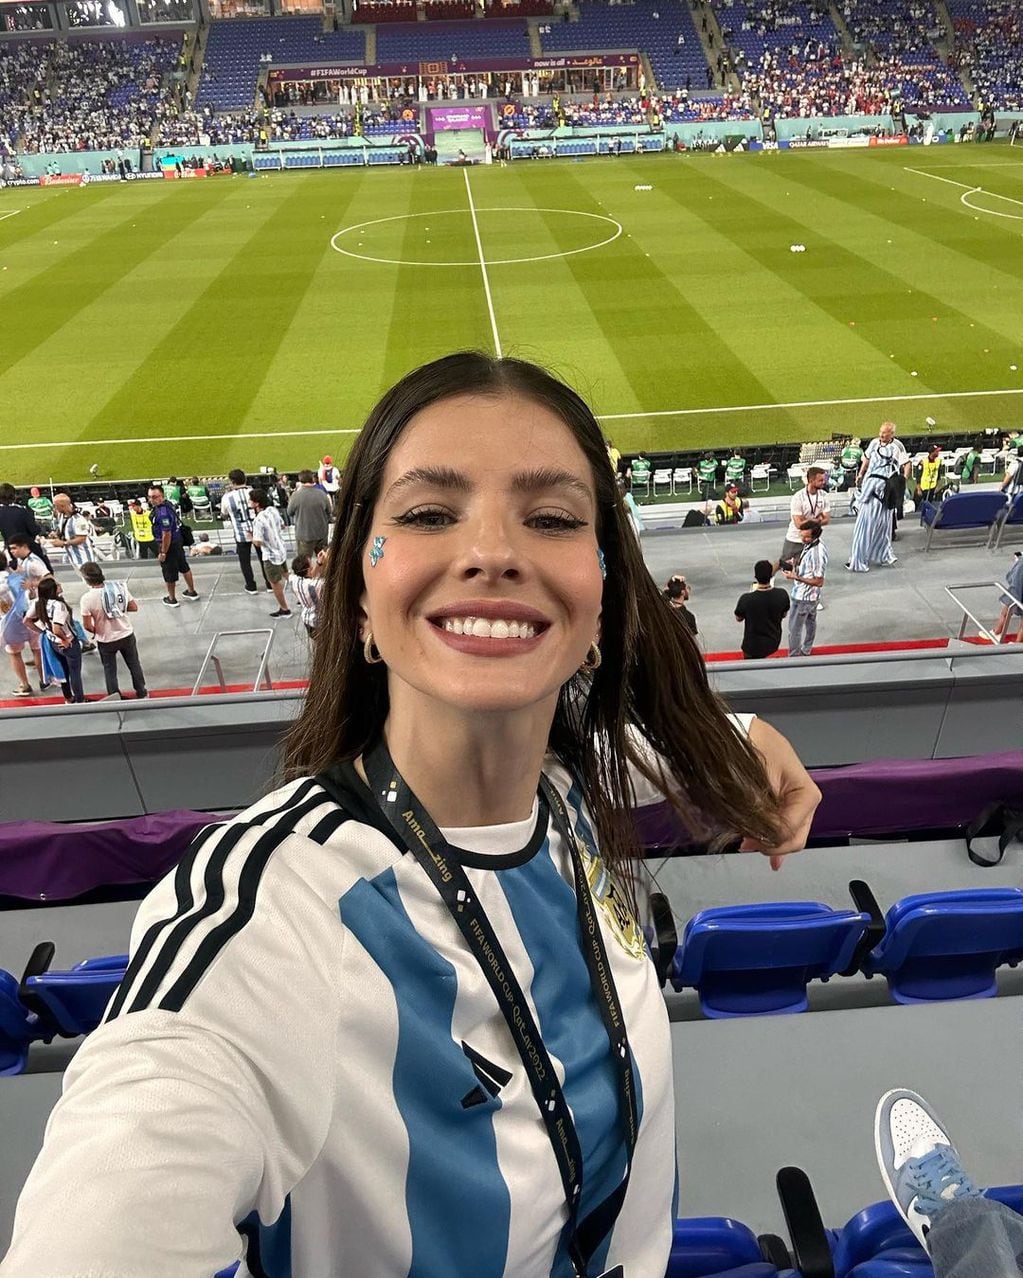 La China Suárez compartió fotos desde el estadio donde jugó la Selección Argentina contra Polonia.